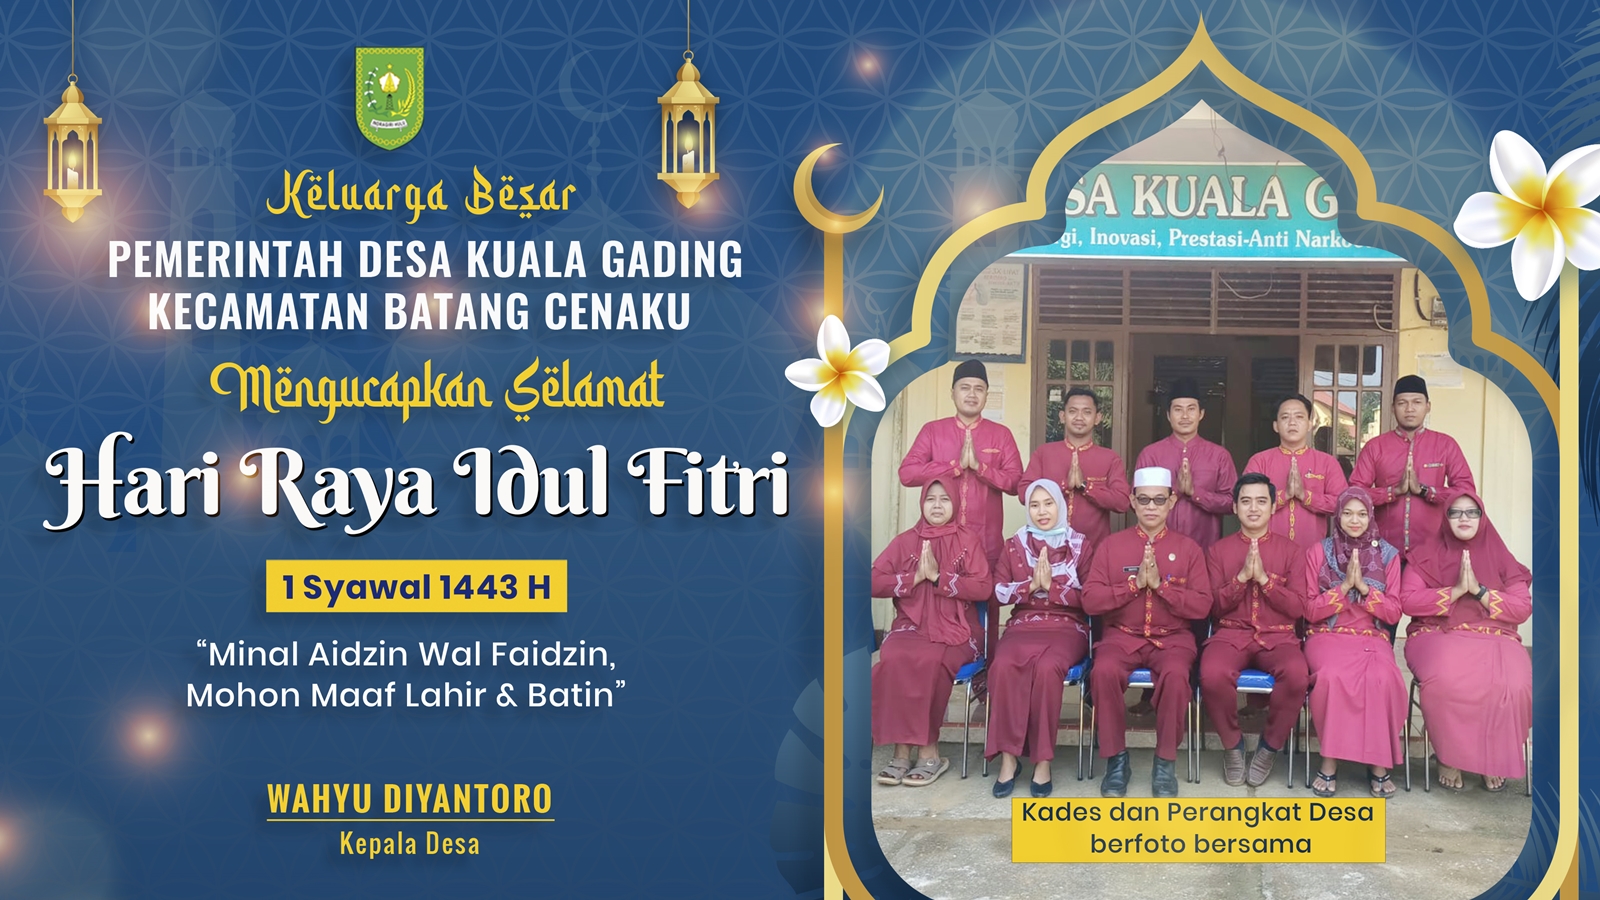 Pemerintah Desa Kuala Gading Ucapkan Selamat Hari Raya Idul Fitri 1443 H